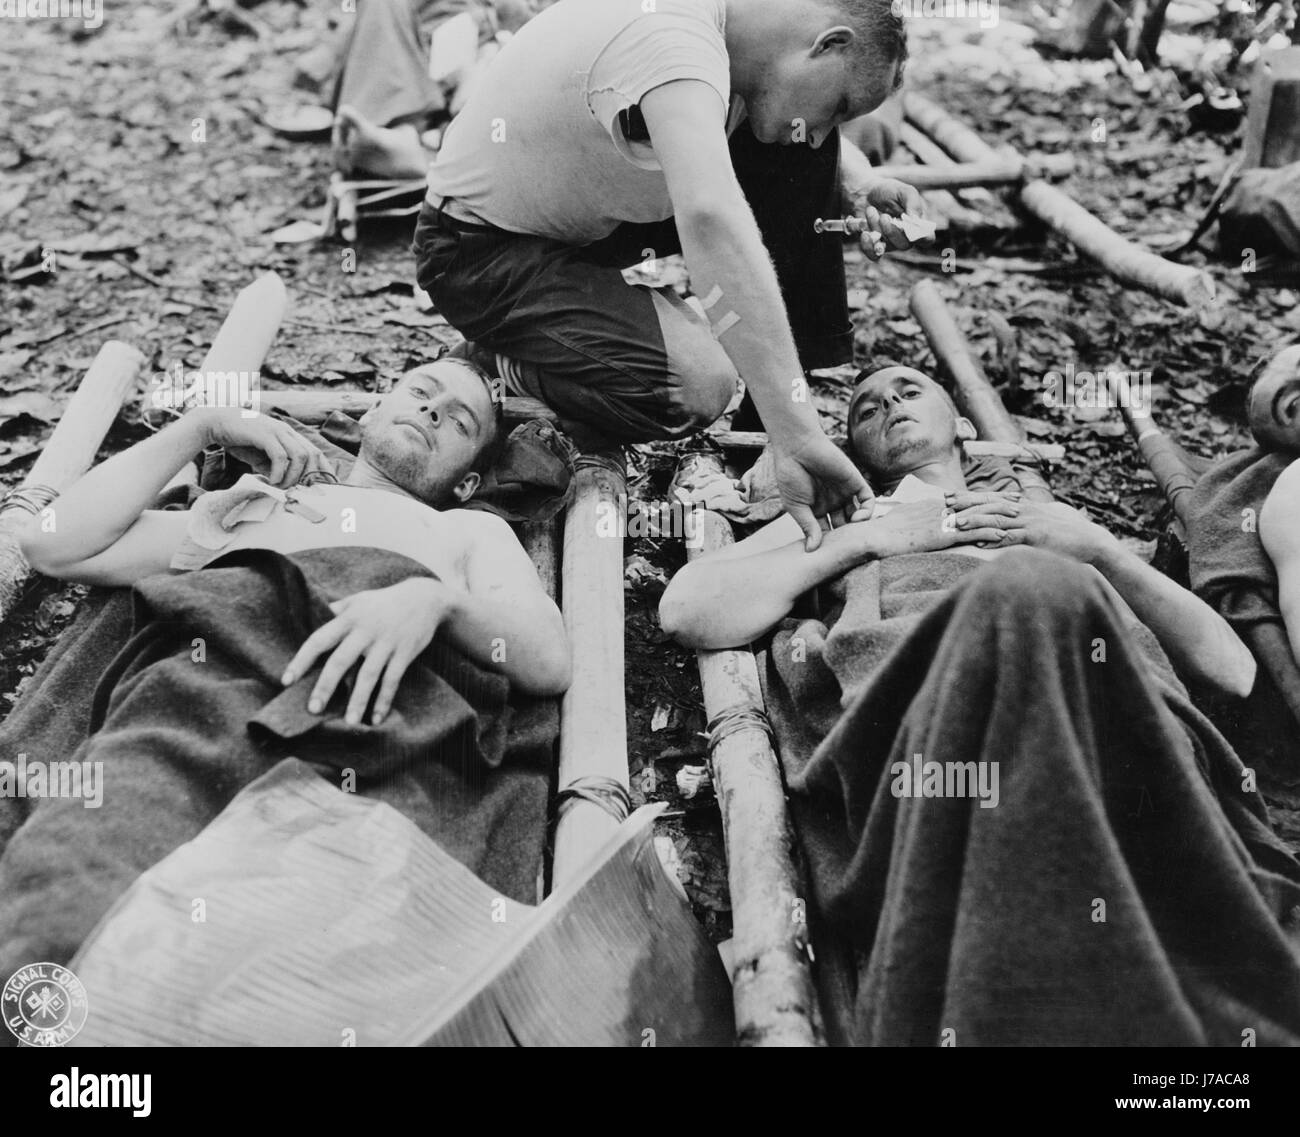 Vertrauensarzt mit Aufmerksamkeit für verwundete amerikanische Soldaten in Neu-Guinea, ca. 1942-1945. Stockfoto